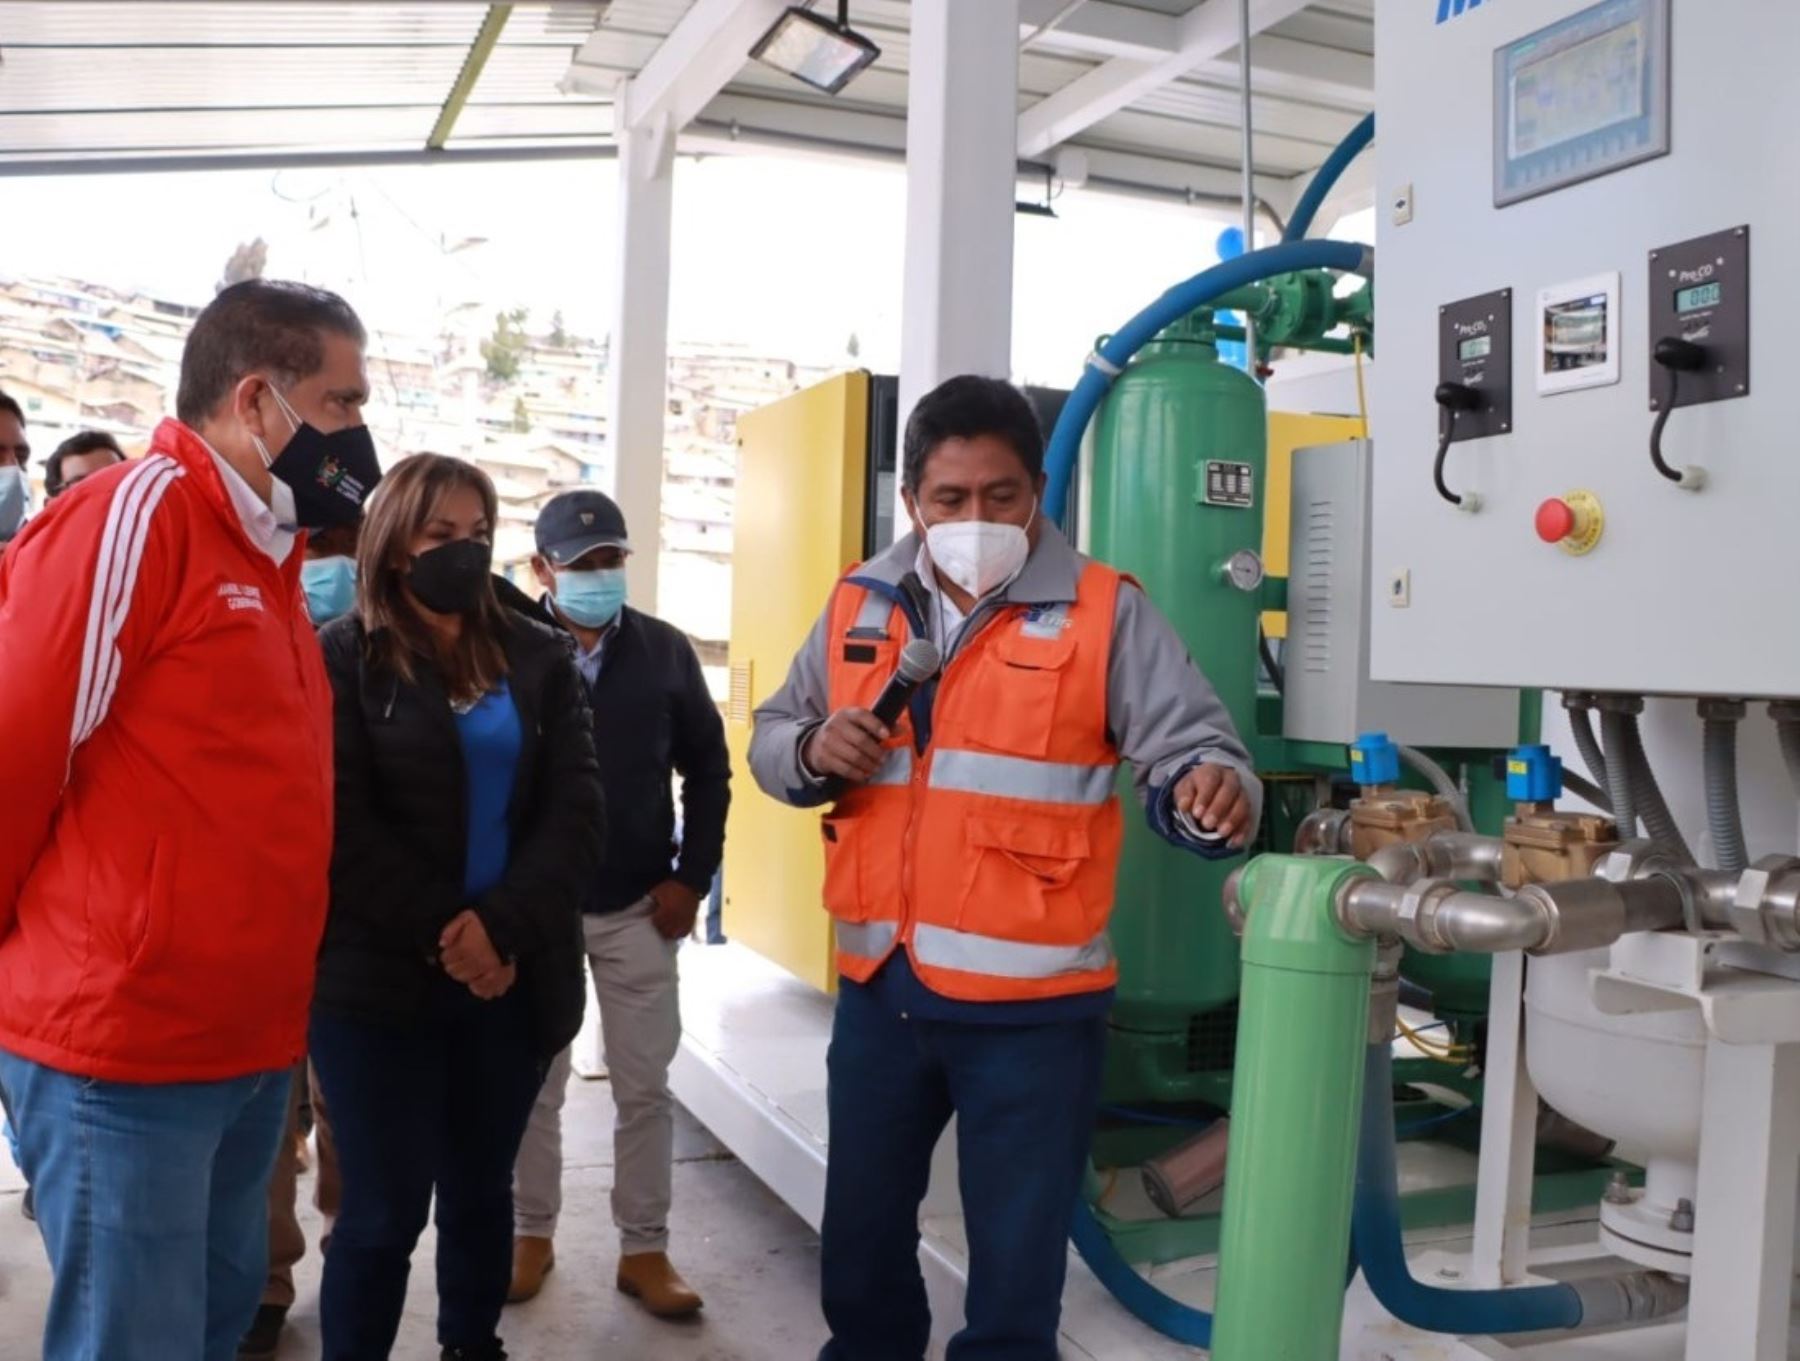 El Gobierno Regional de La Libertad inauguró la segunda planta de oxígeno medicinal en el distrito de Quiruvilca, provincia de Santiago de Chuco, que ayudará a fortalecer lucha contra el covid-19. ANDINA/Difusión